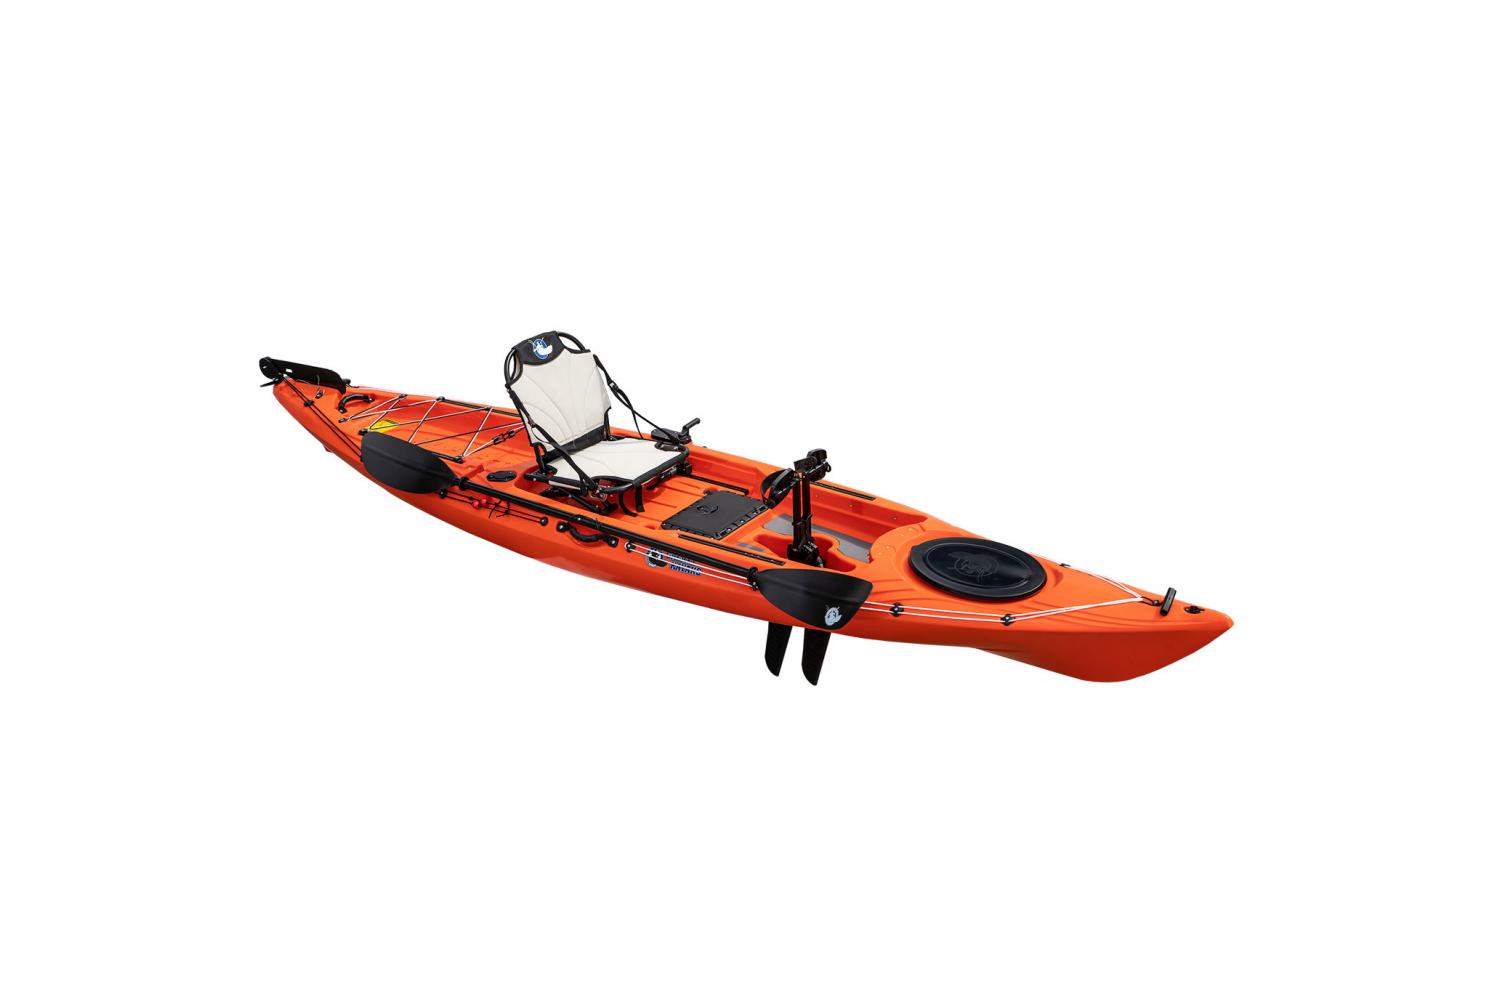 12' Ranger Mirage Compatible Fishing Kayak